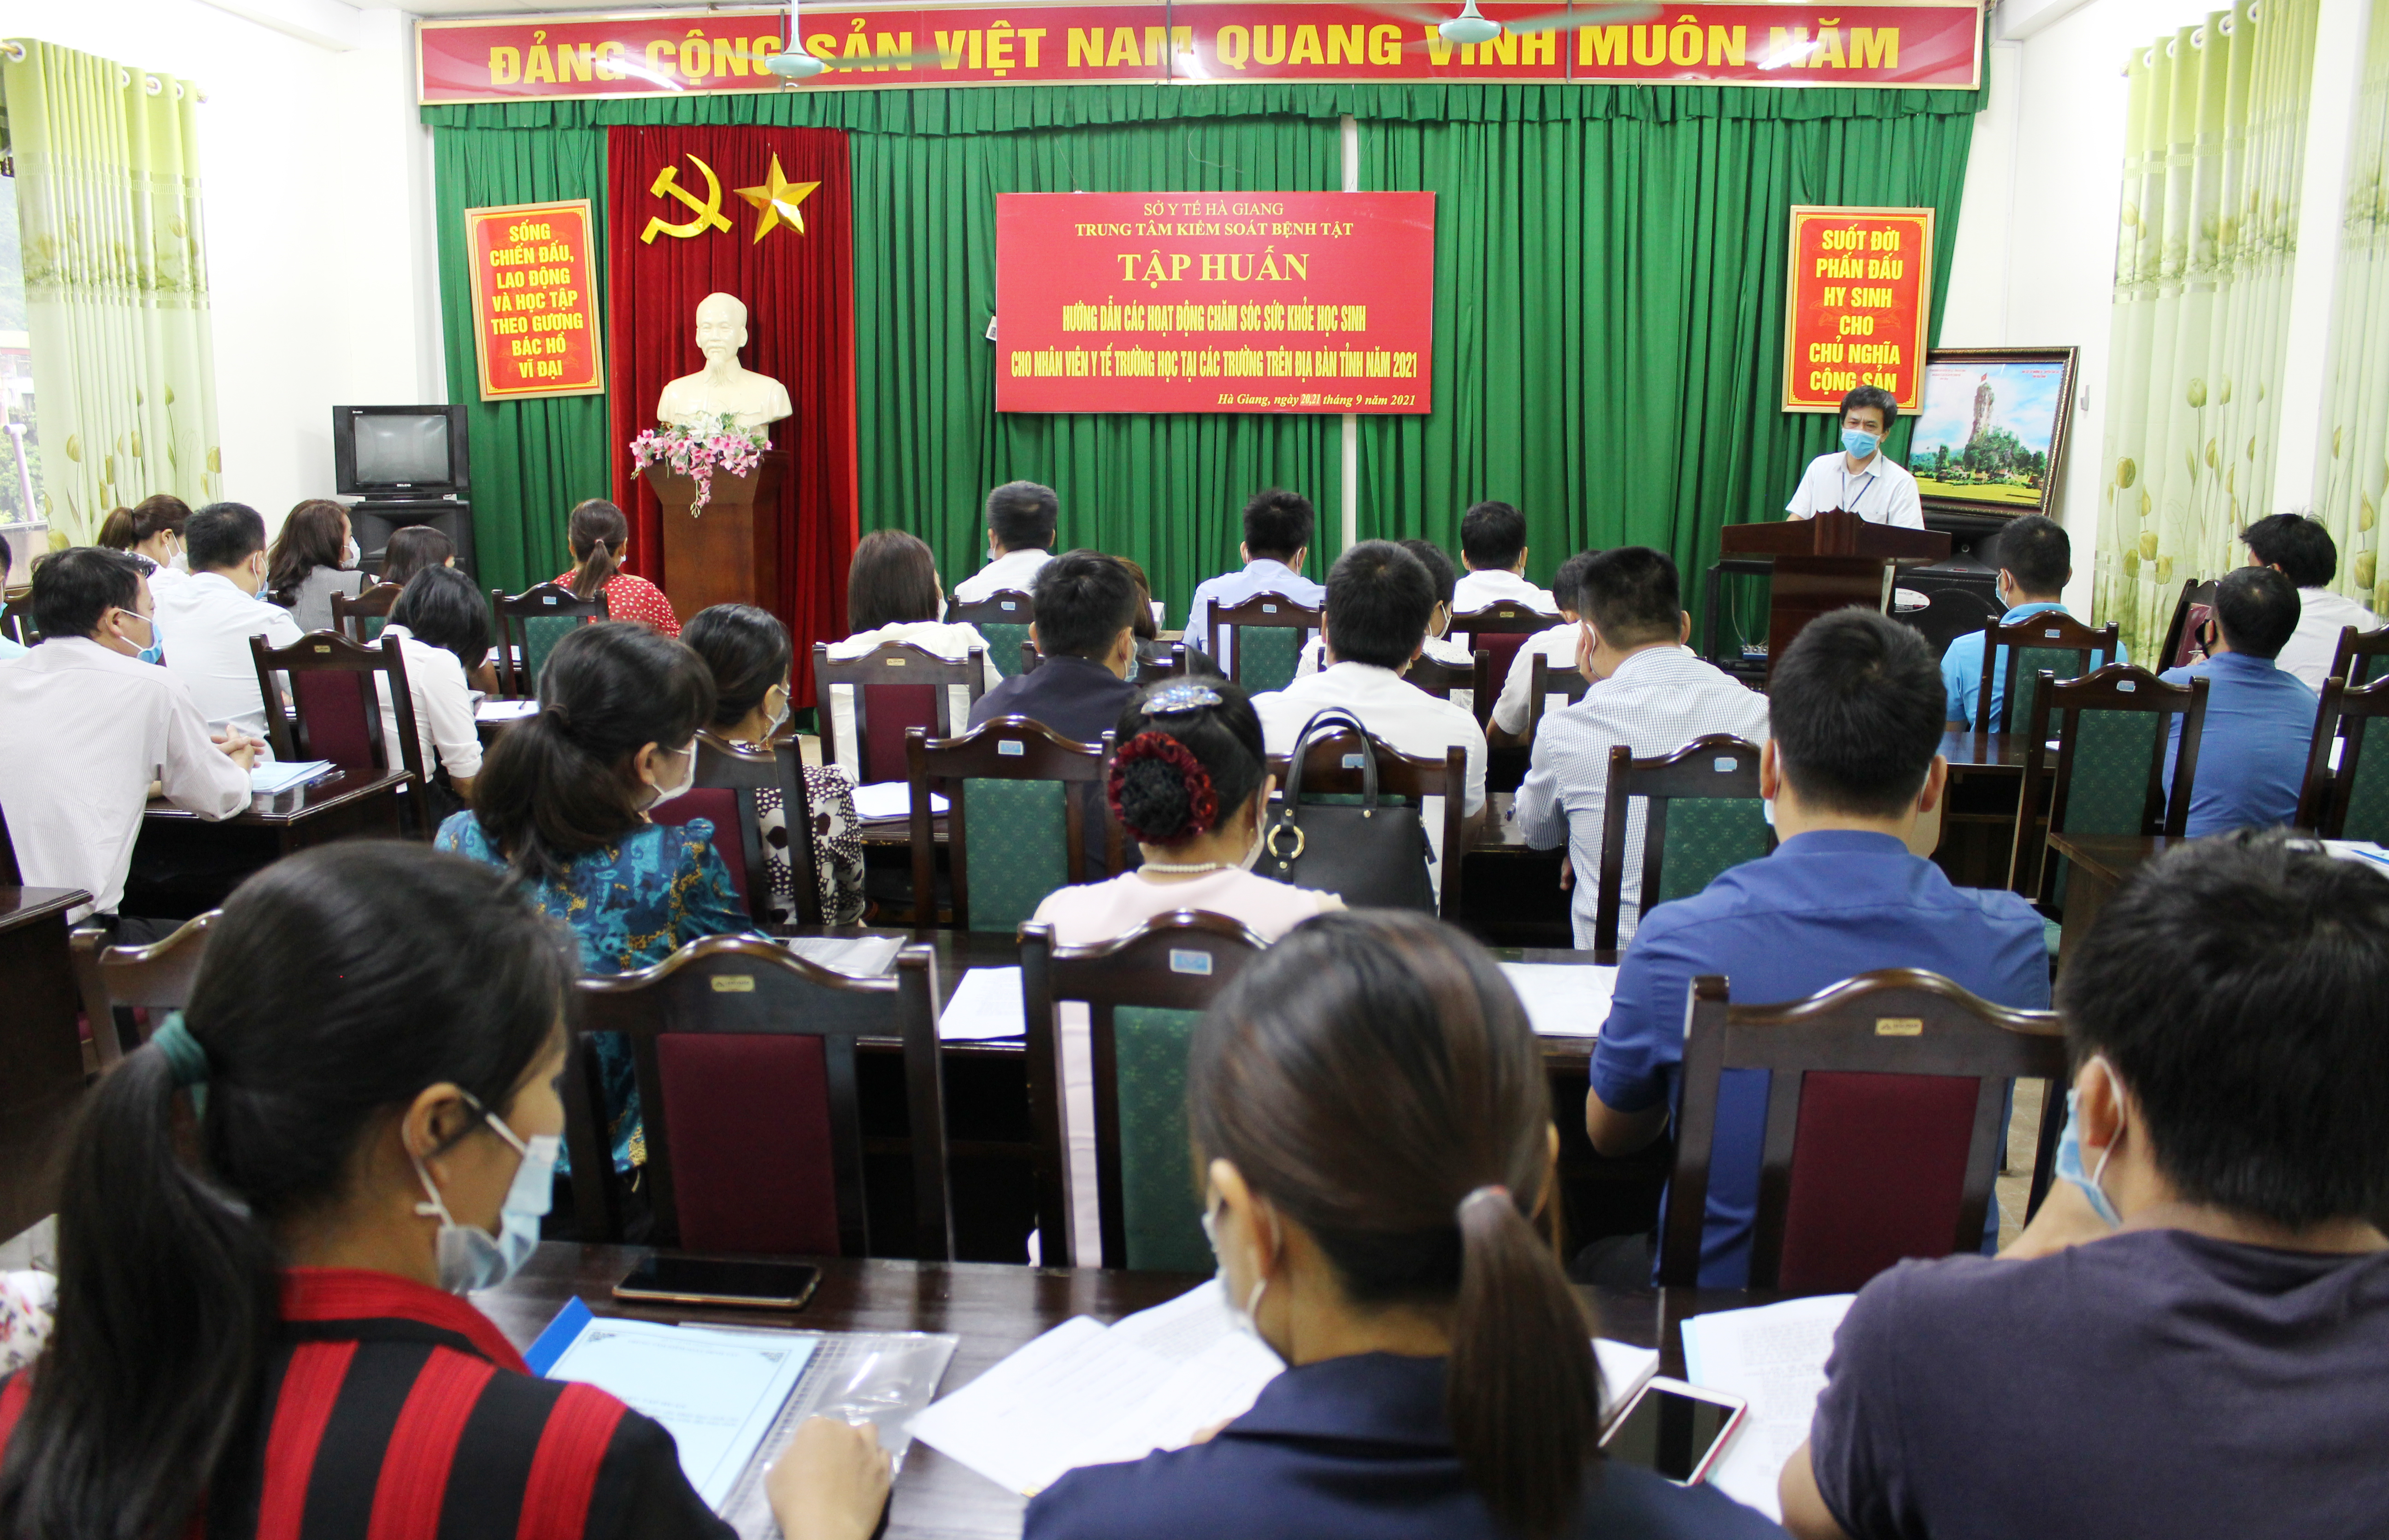 Đ/c Nguyễn Xuân Thu, Phó Giám đốc Trung tâm Kiểm soát bệnh tật khai mạc lớp tập huấn